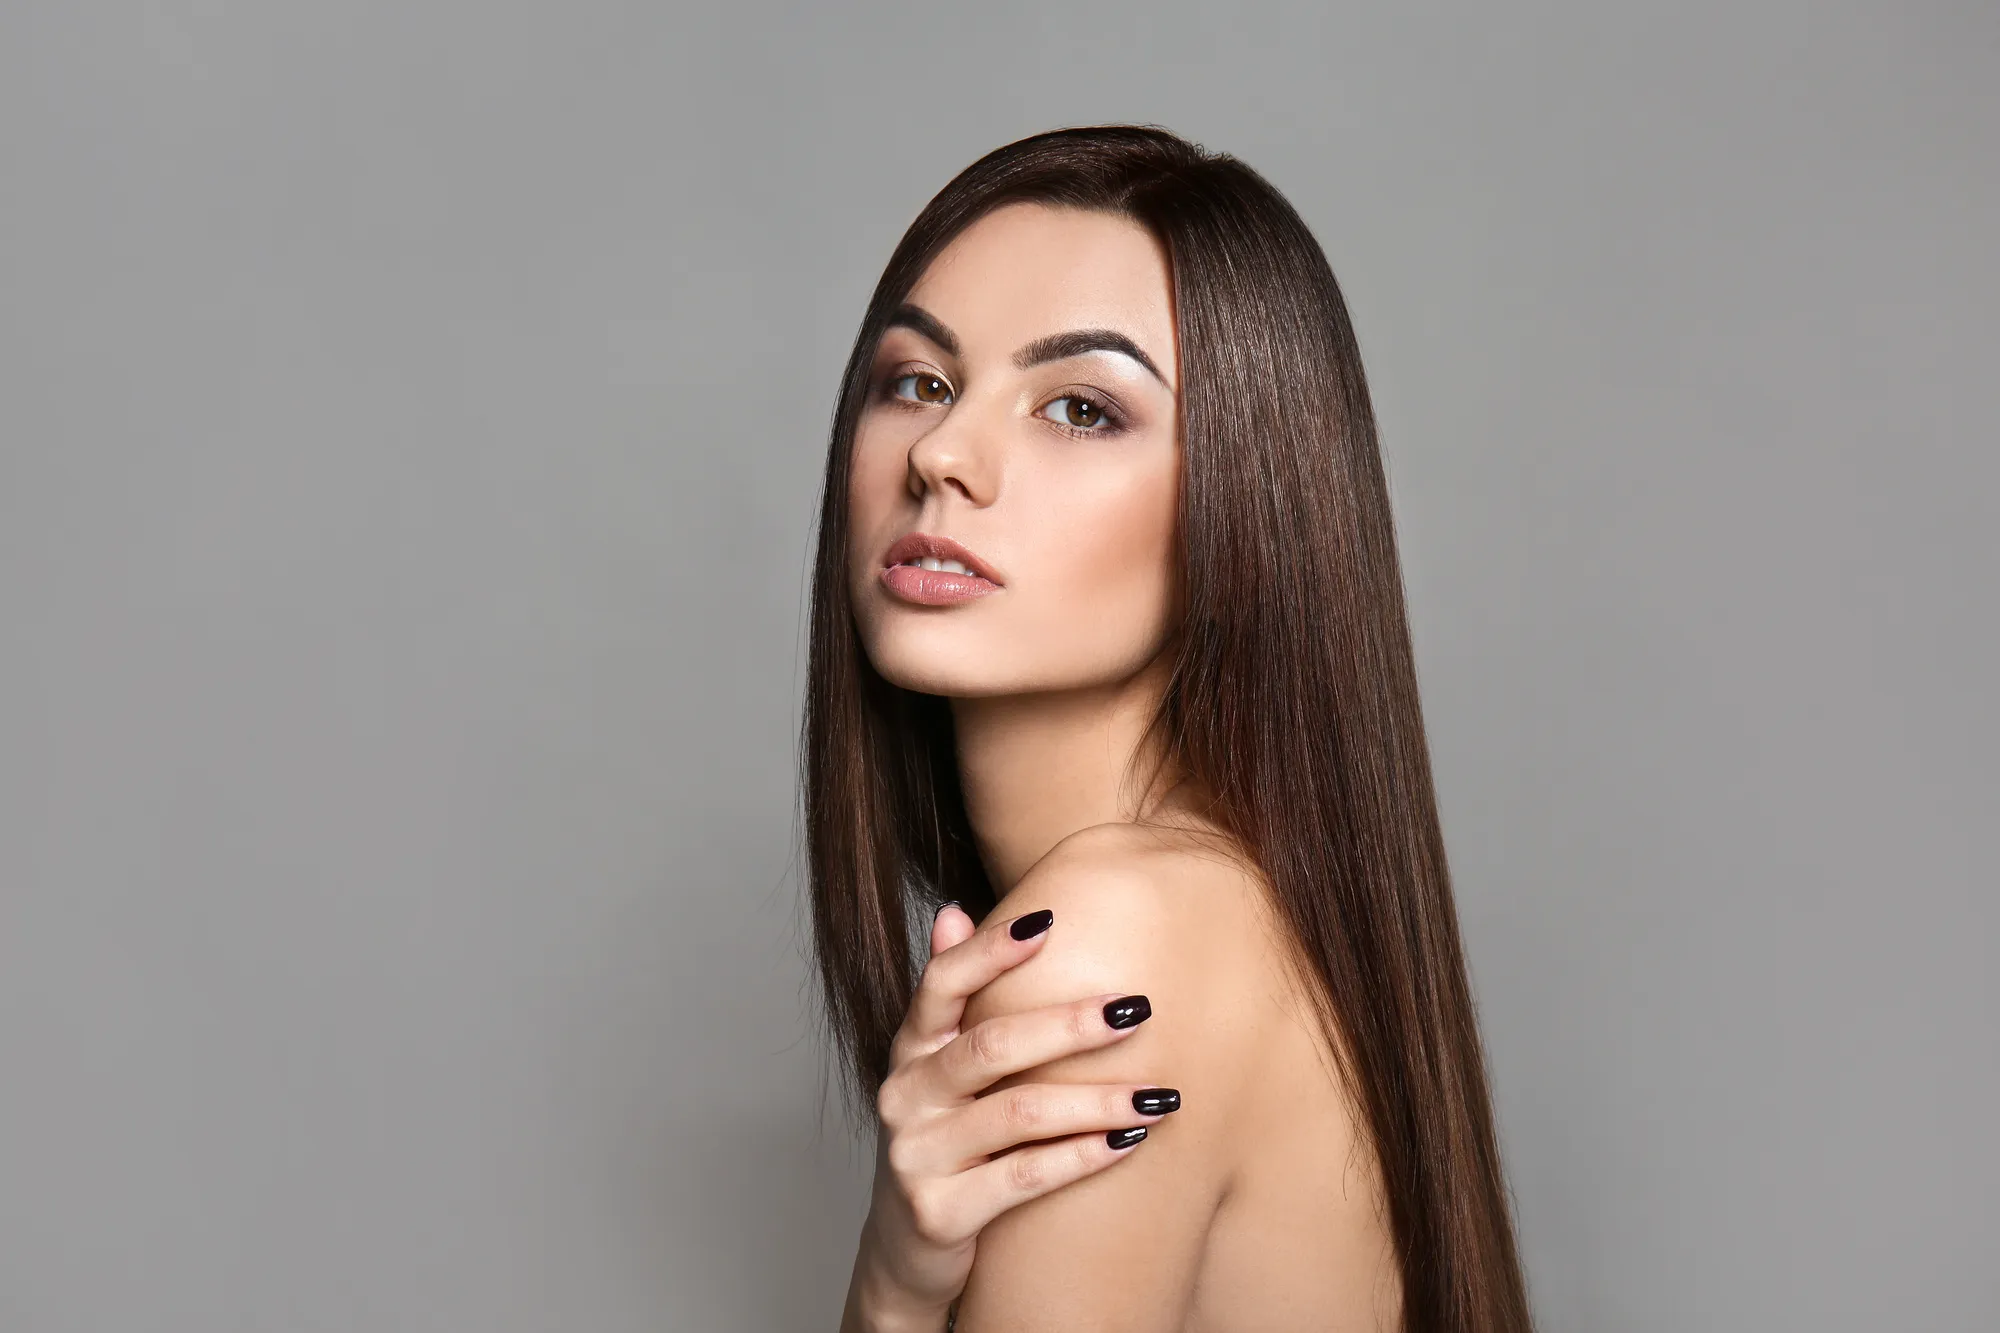 Наука о косметике для волос: Уход за локонами и их совершенствование